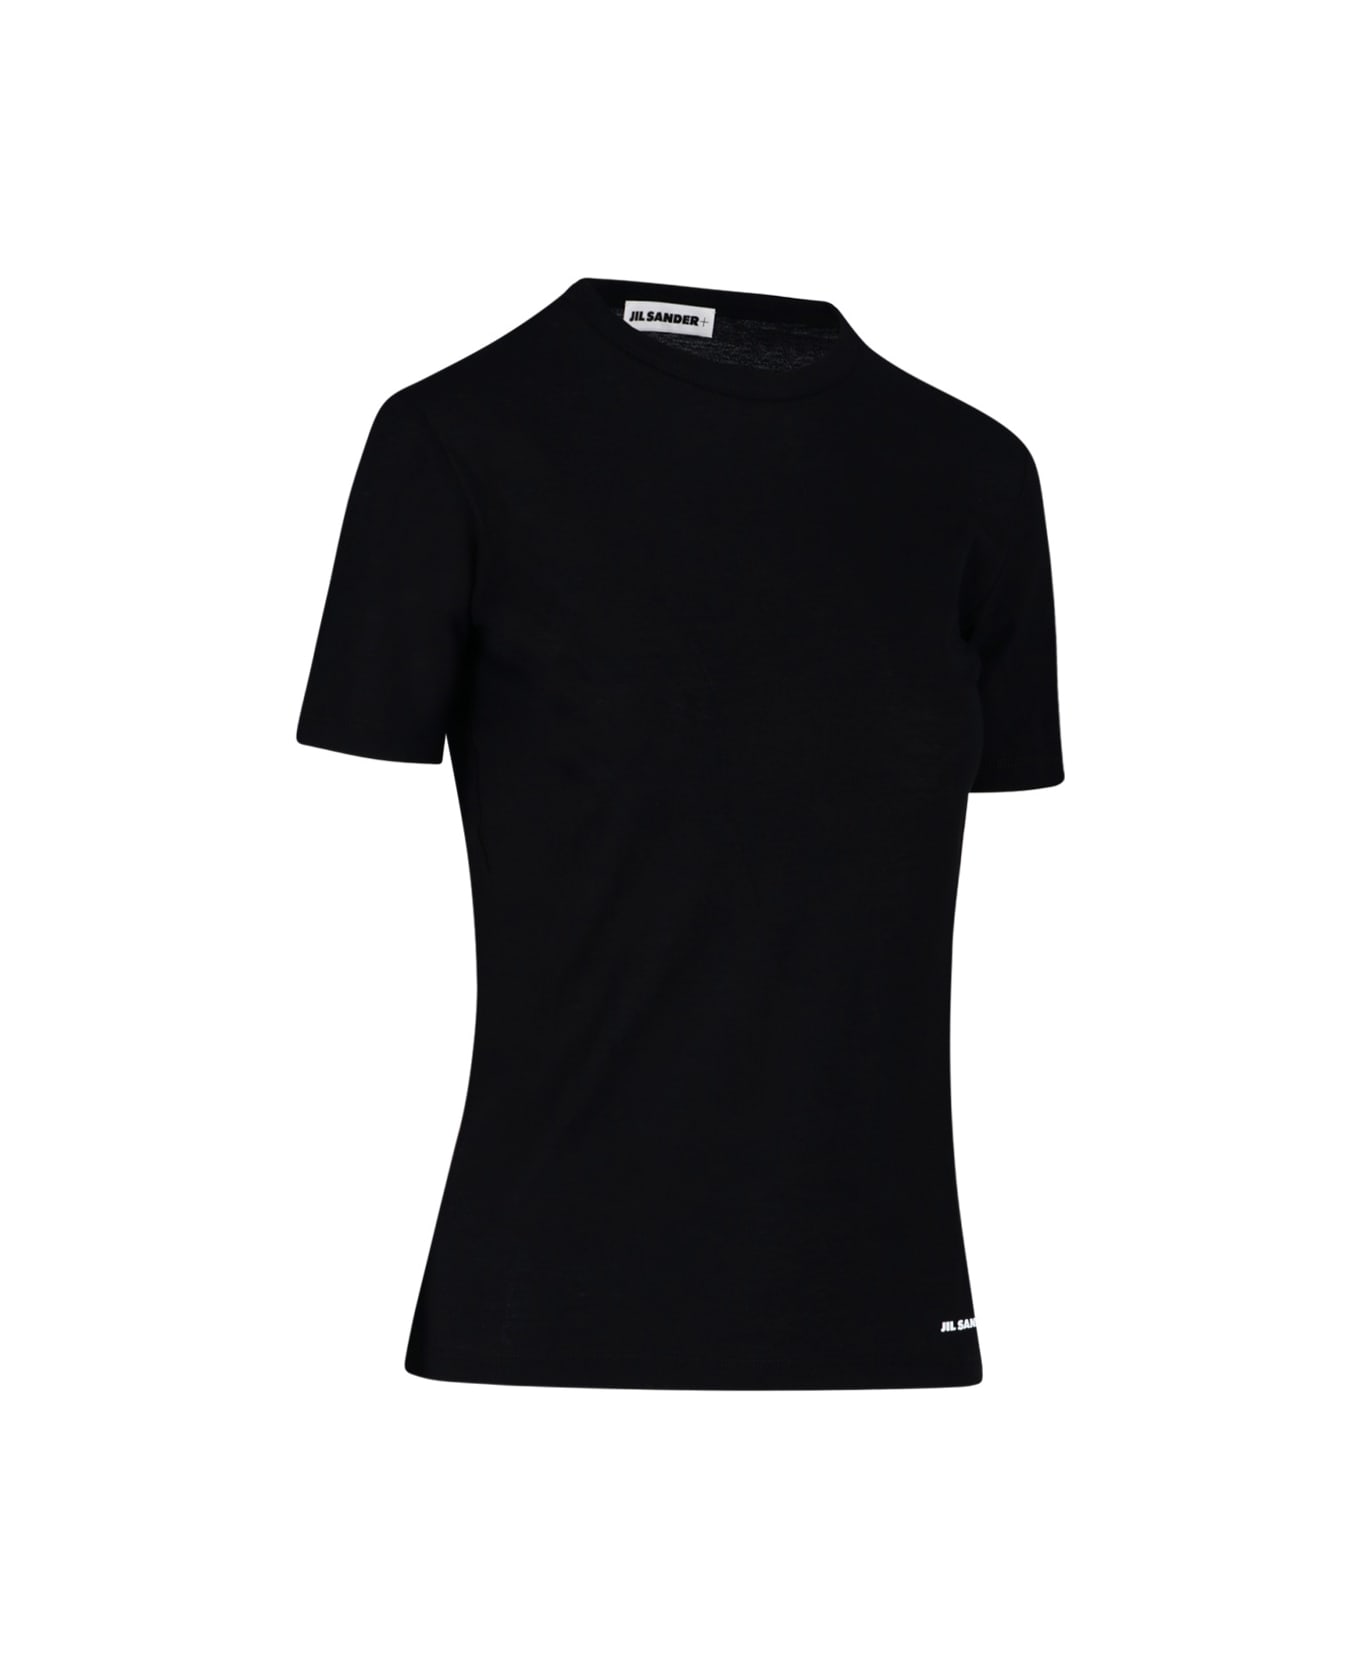 Jil Sander Classic T-shirt - Black Tシャツ